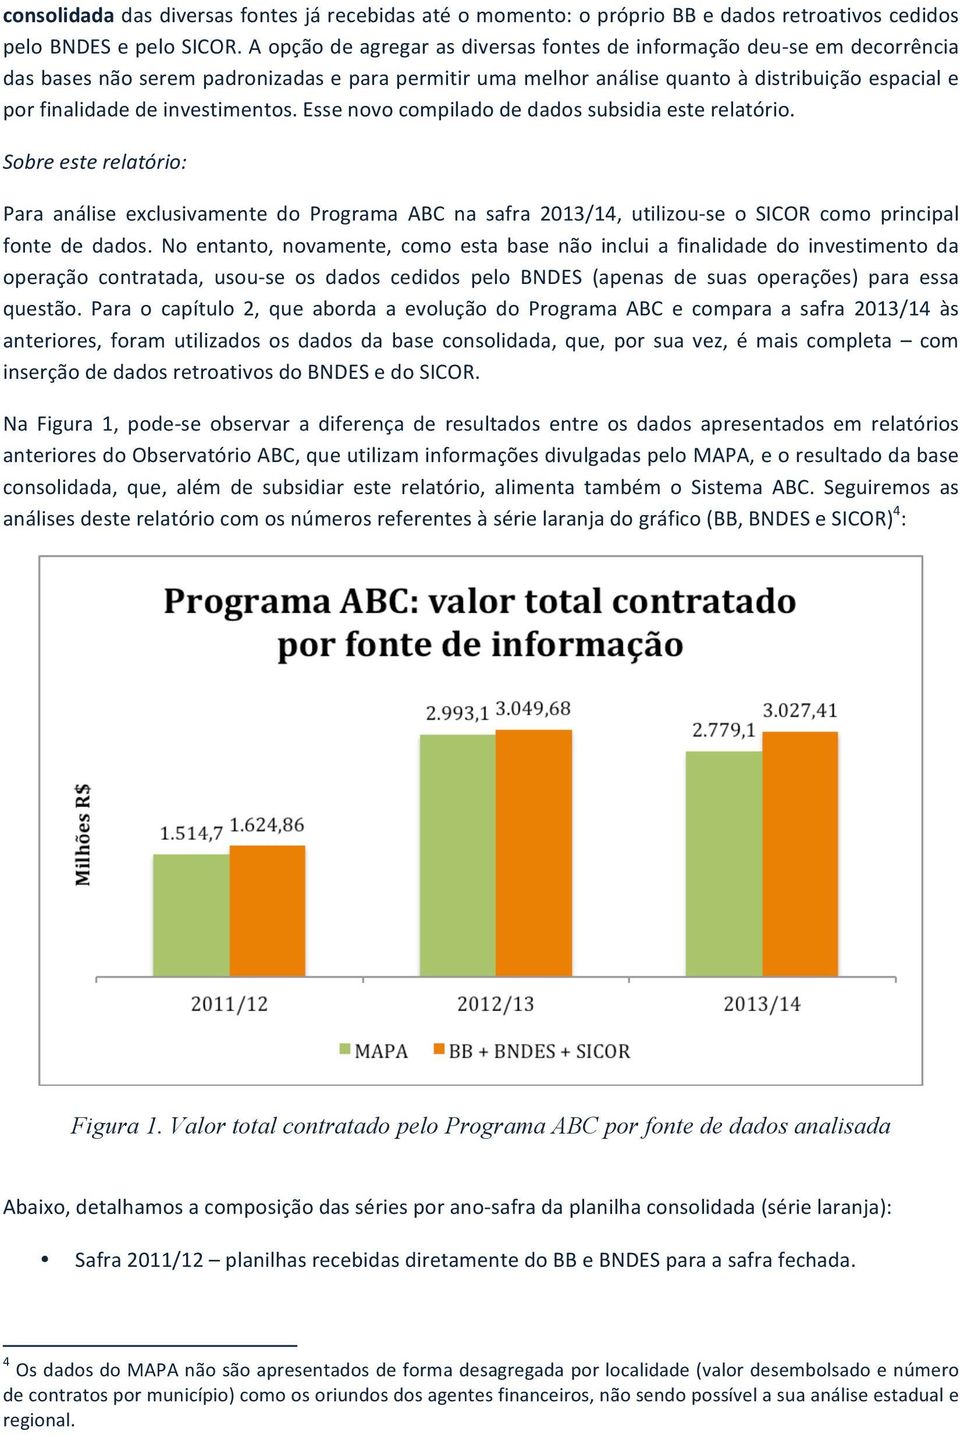 essenovocompiladodedadossubsidiaesterelatório. Sobre&este&relatório:& Para análise exclusivamente do Programa ABC na safra 2013/14, utilizousse o SICOR como principal fonte de dados.